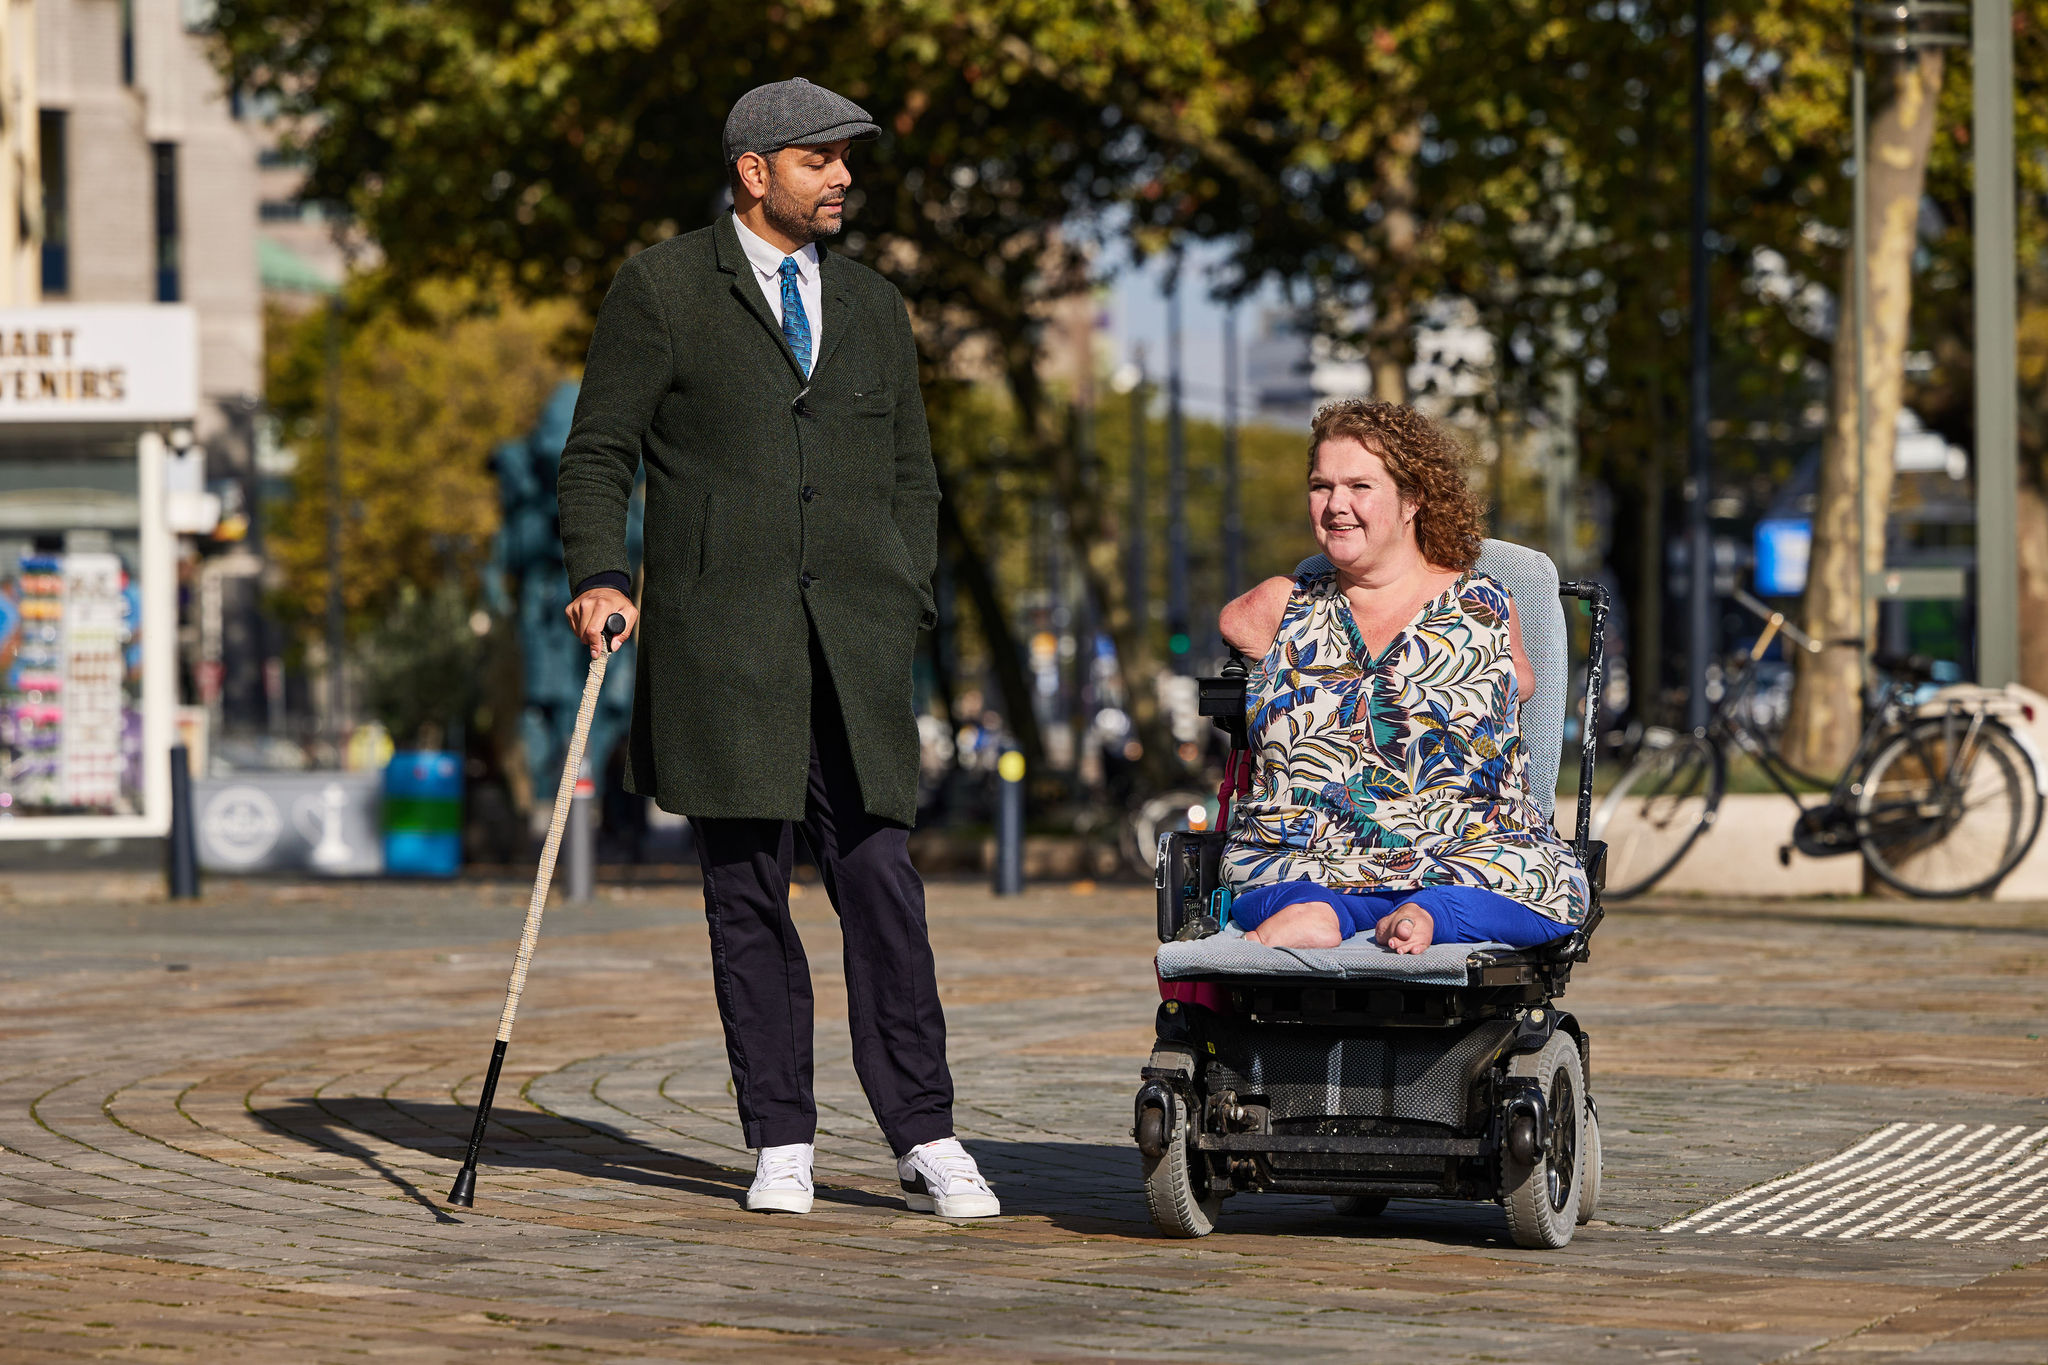 Man met een wandelstok en vrouw in een aangepaste rolstoel